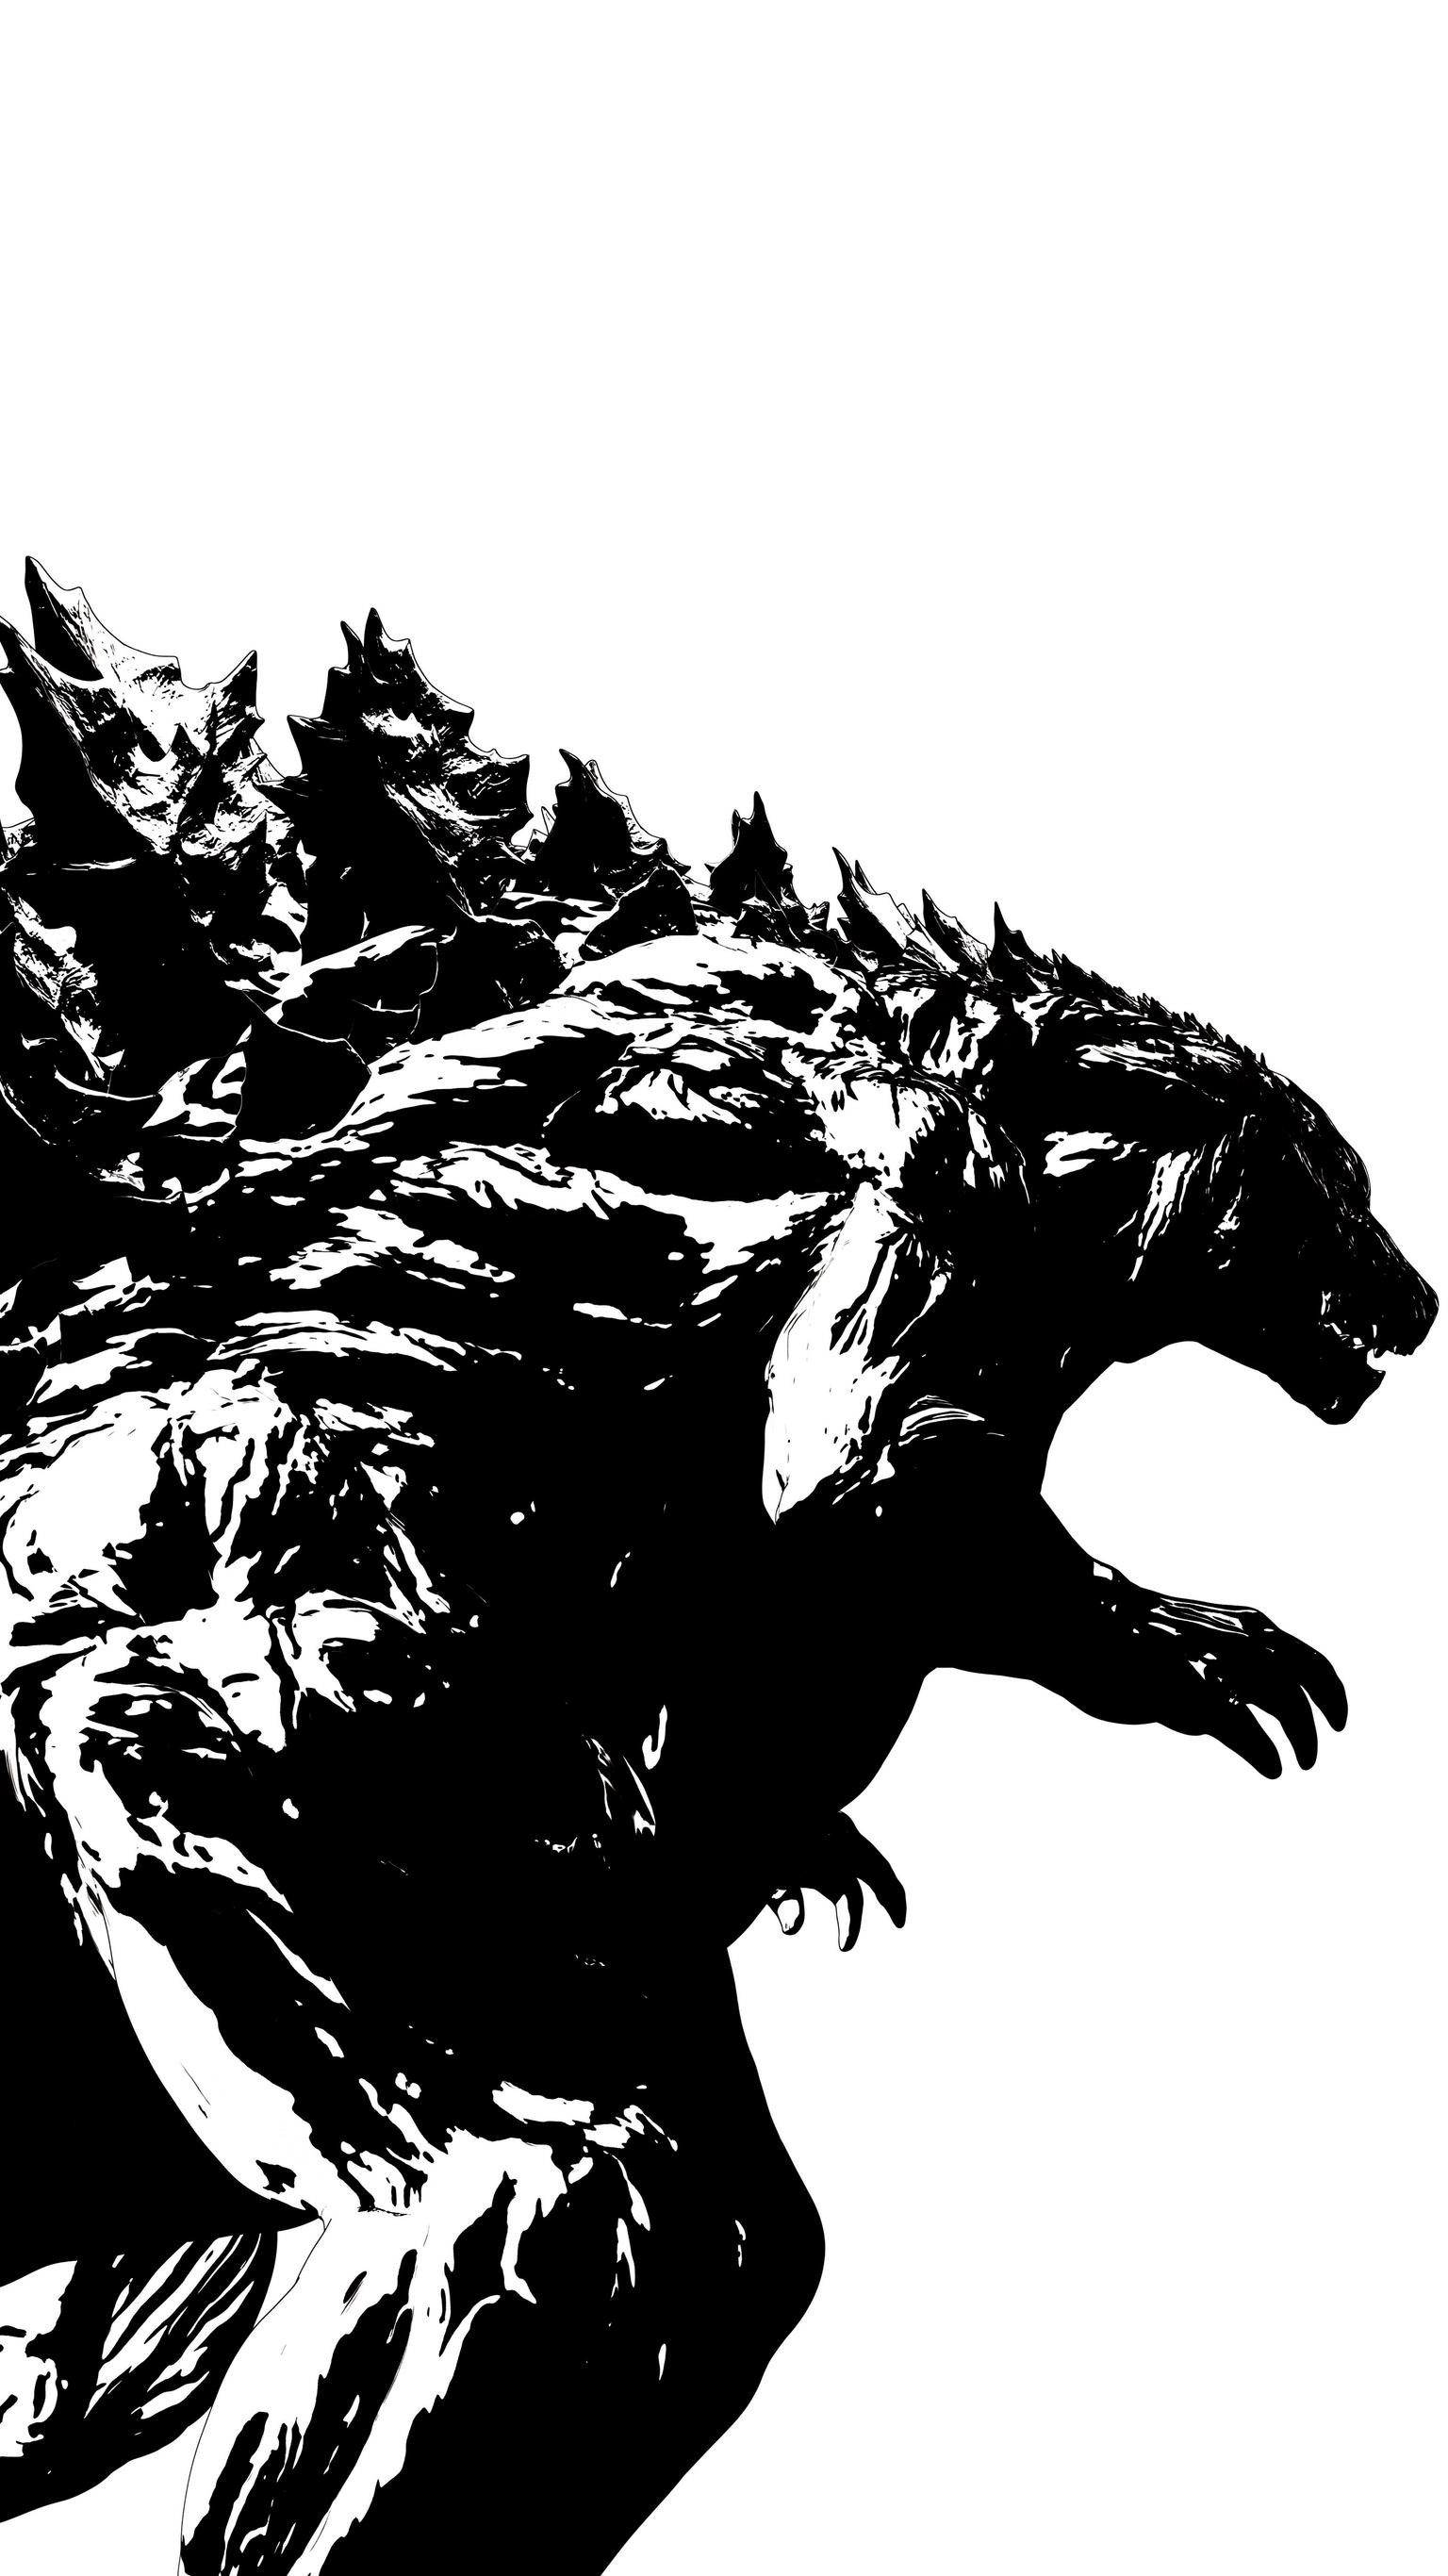 fond d'écran iphone godzilla,loup garou,personnage fictif,créature mythique,illustration,grizzly